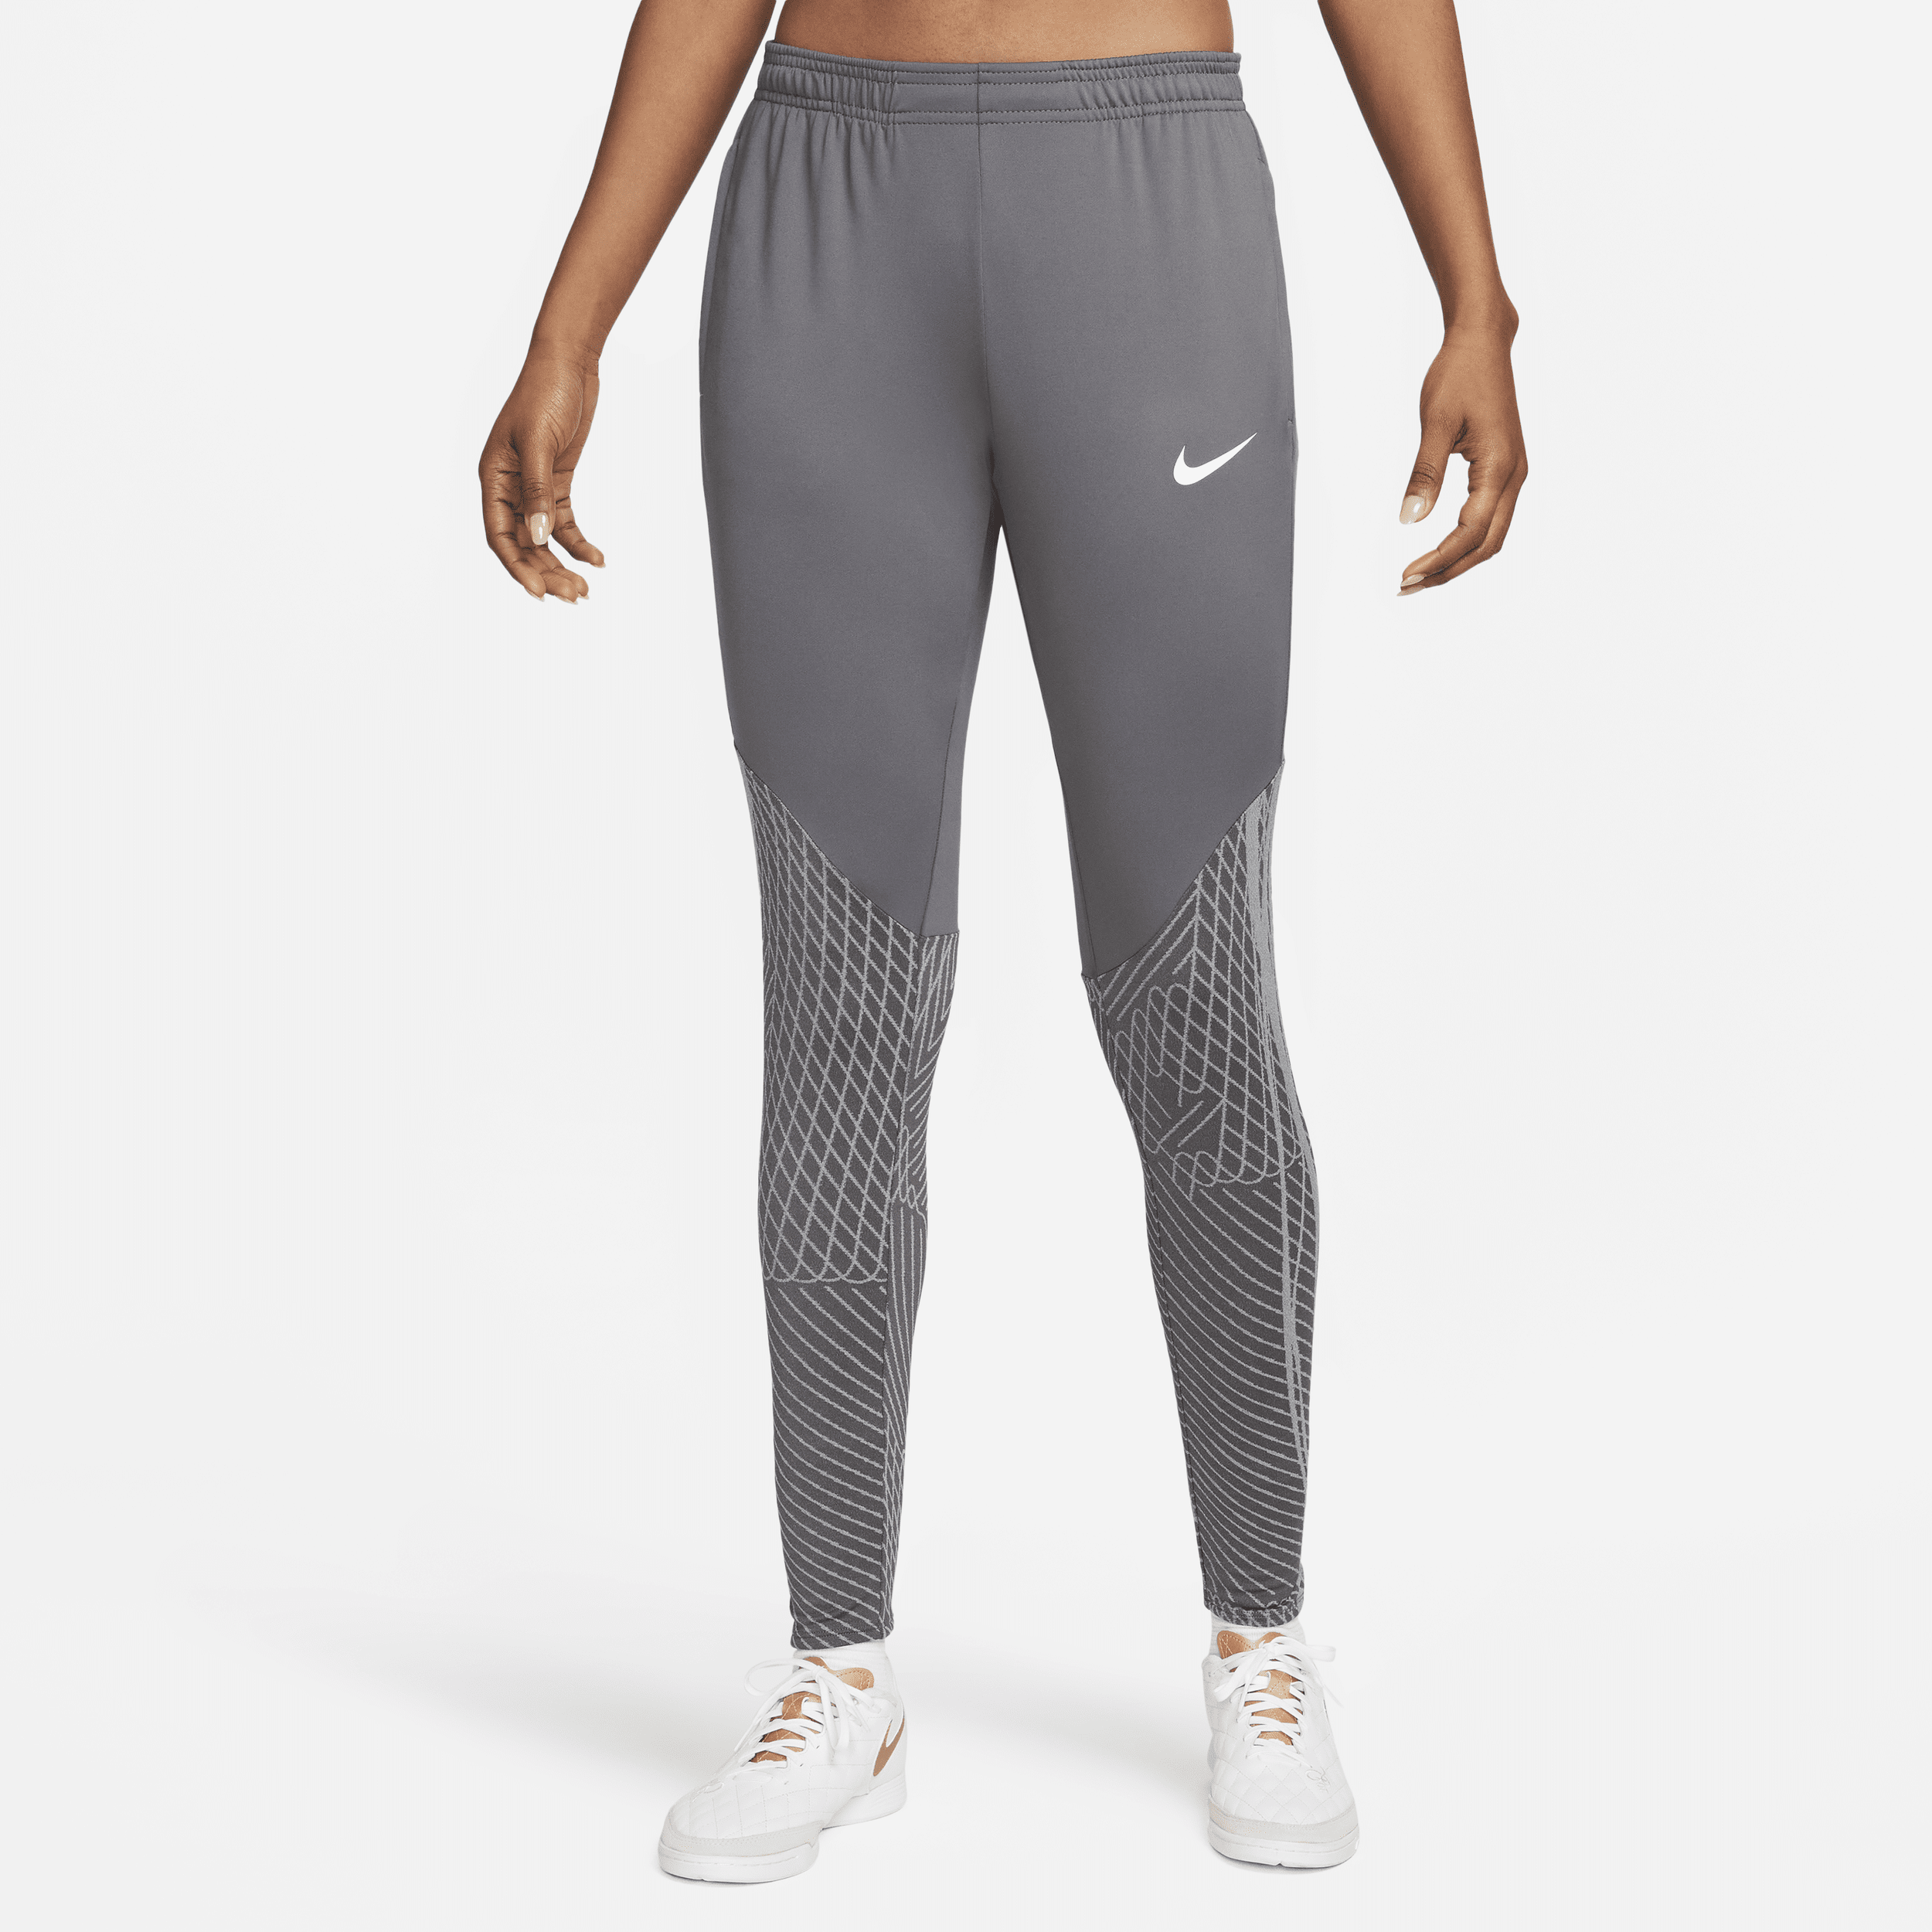 Nike Women's Dri-fit Strike Soccer Pants In Grey